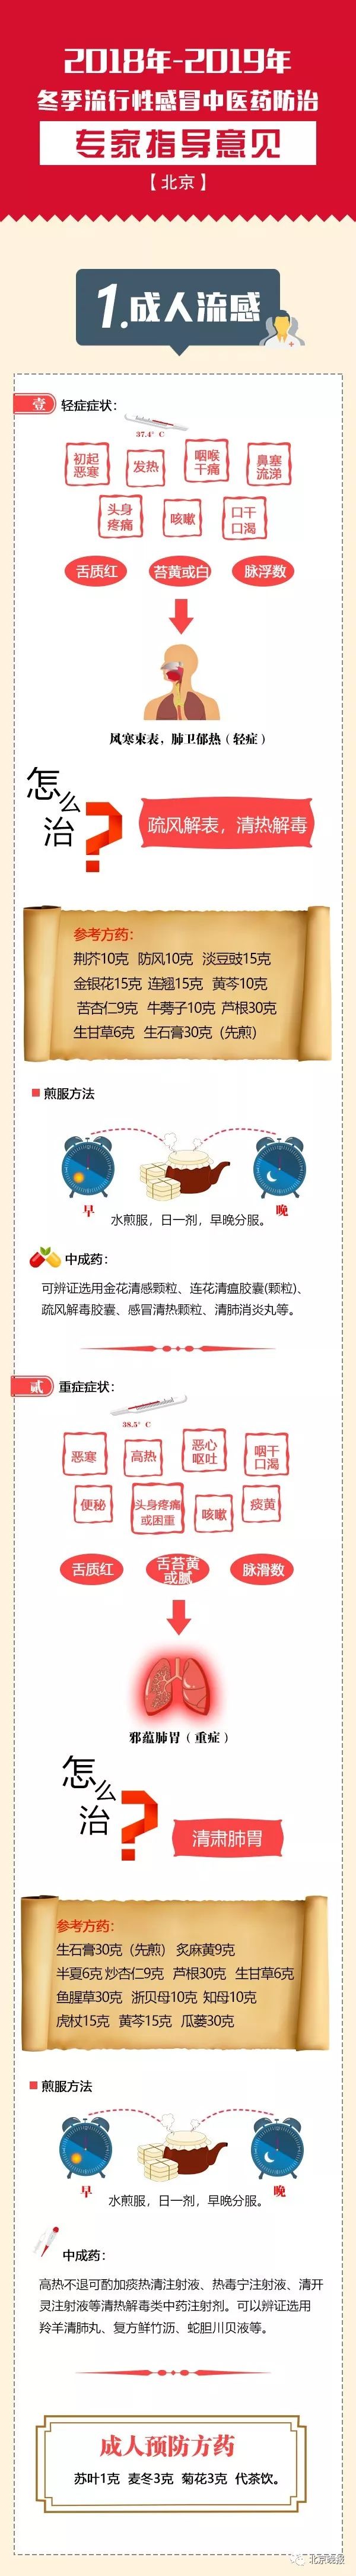 北京38家中医医疗机构设置儿科流感专台（附名单）[墙根网]